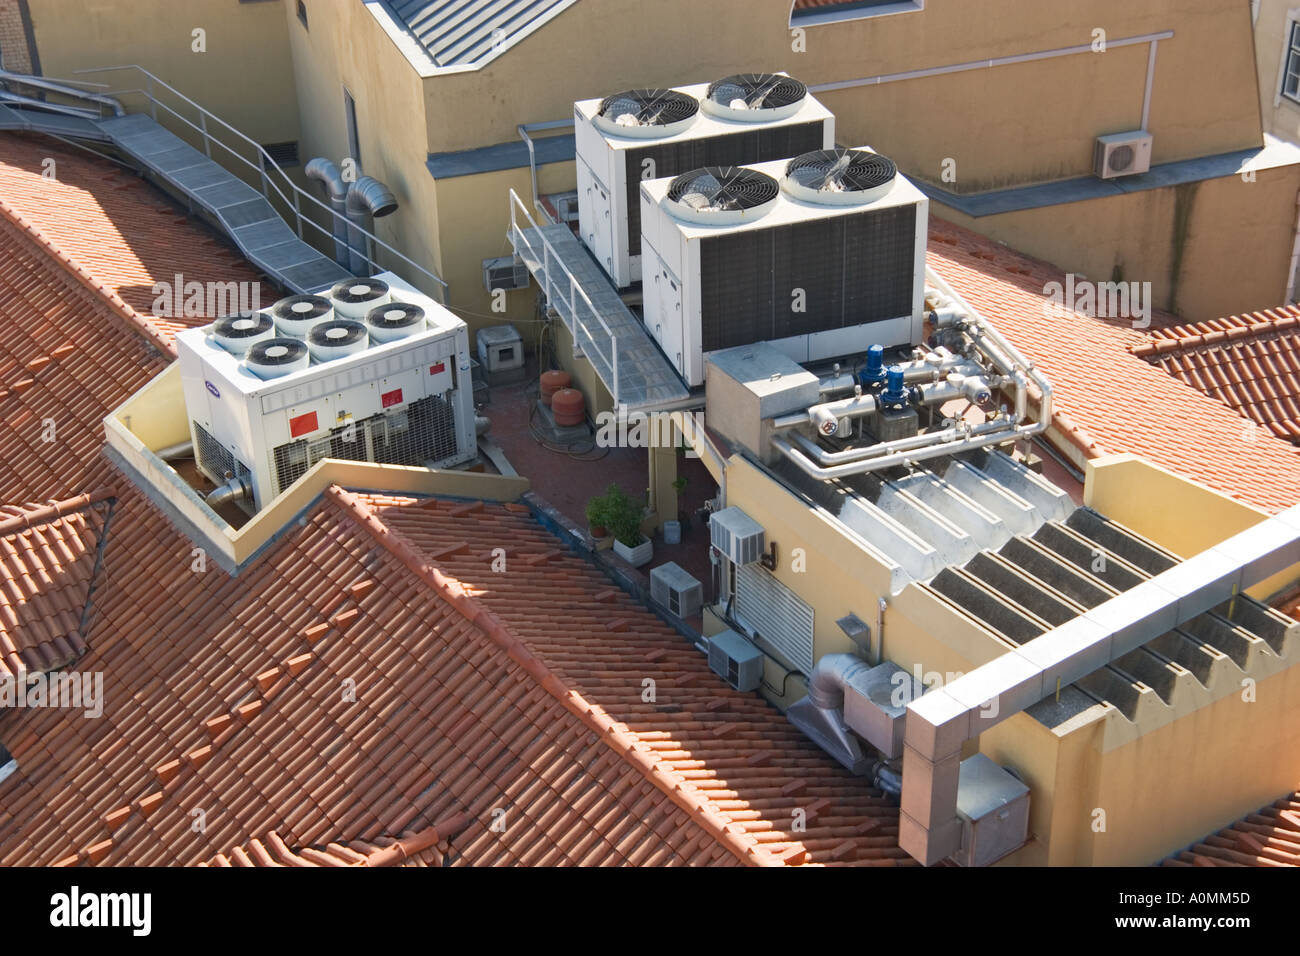 Portugal Lisbonne machines de climatisation sur le toit Photo Stock - Alamy